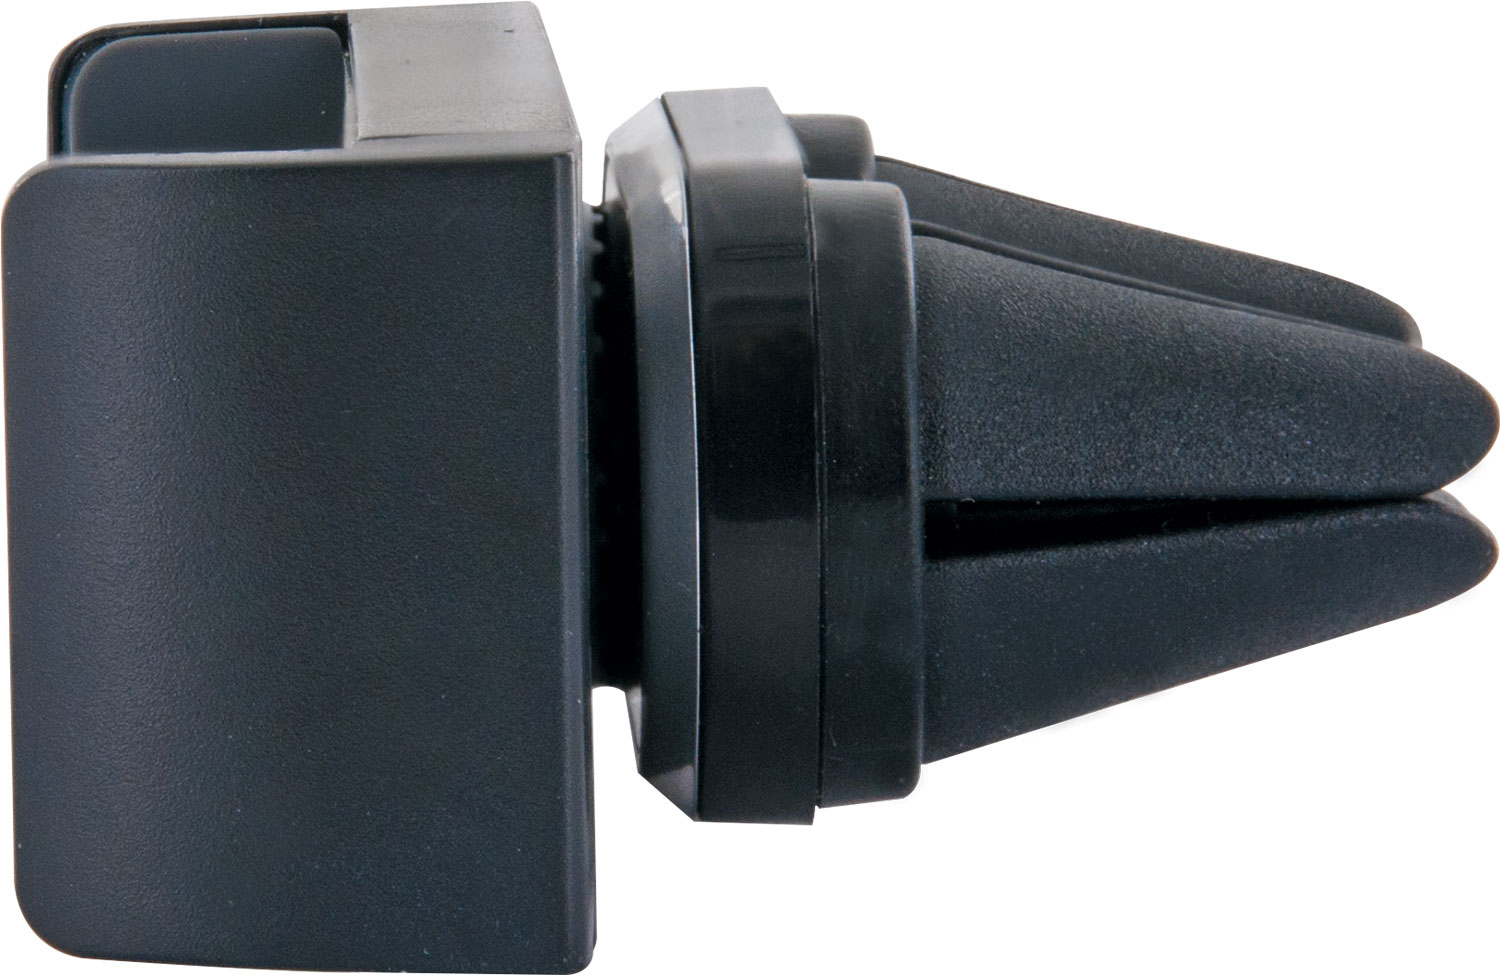 SCHWAIGER -LHSP300 513- Universal Smartphone Halterung Lüftungsgitter, für das Schwarz/Silber